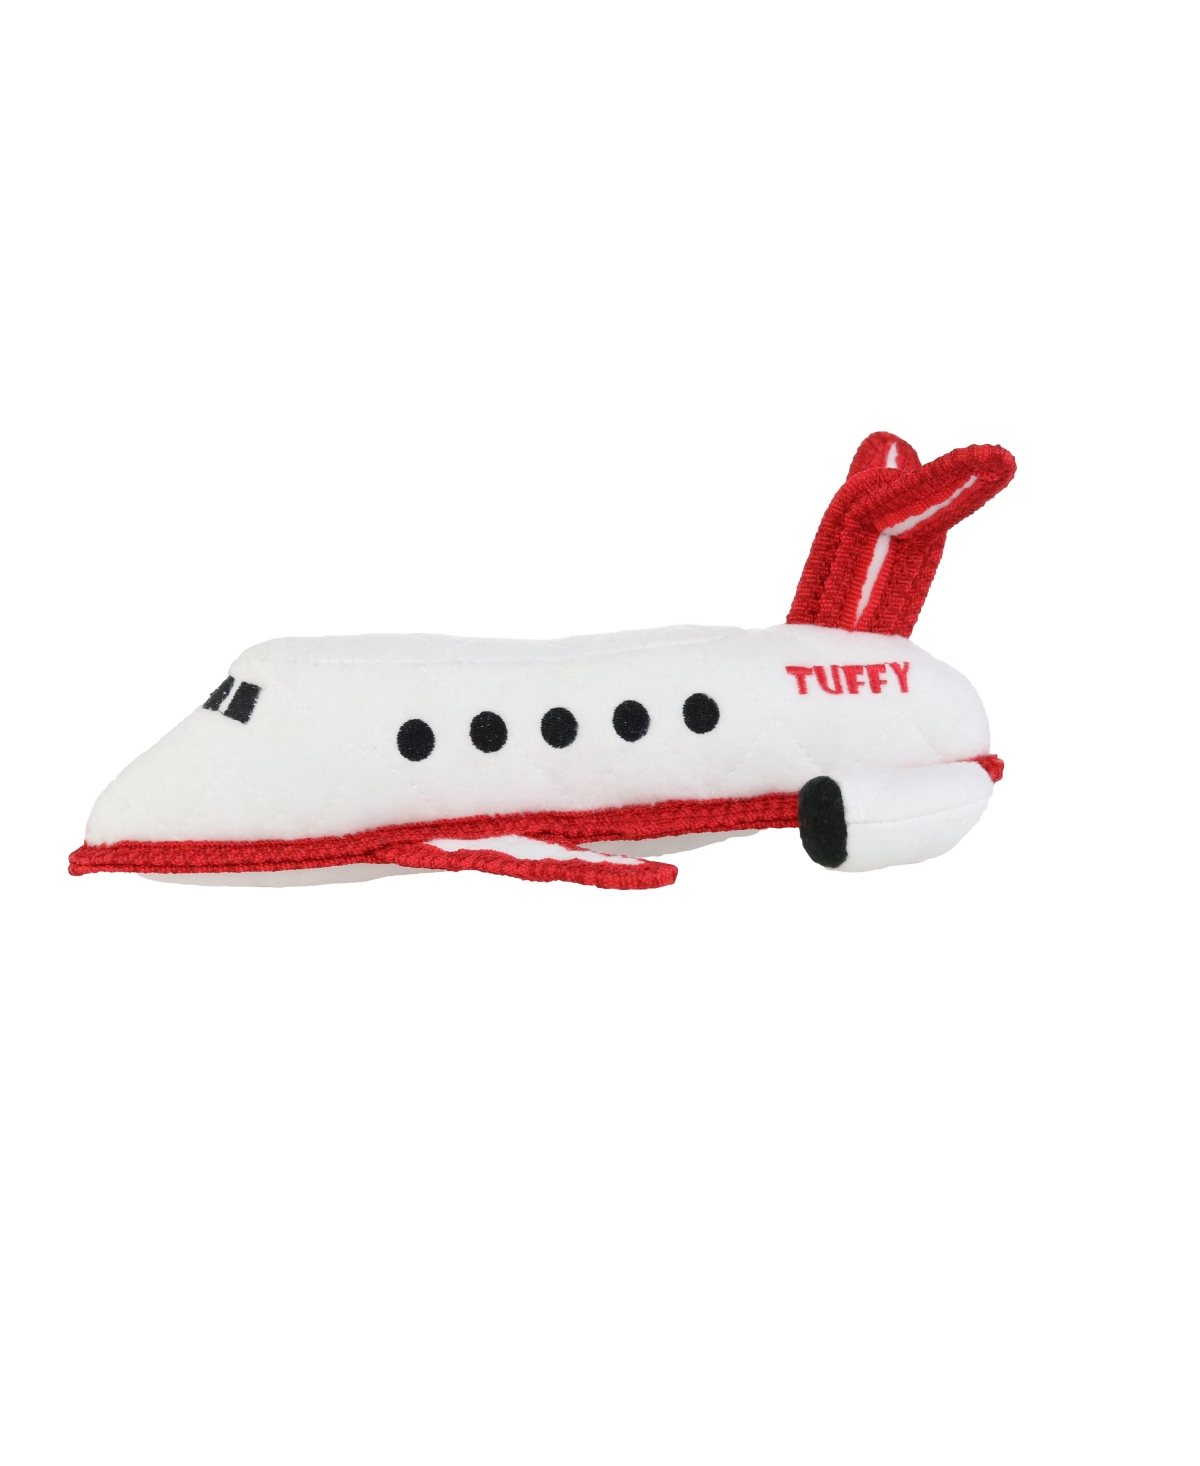 Transportation Plane, Dog Toy - White